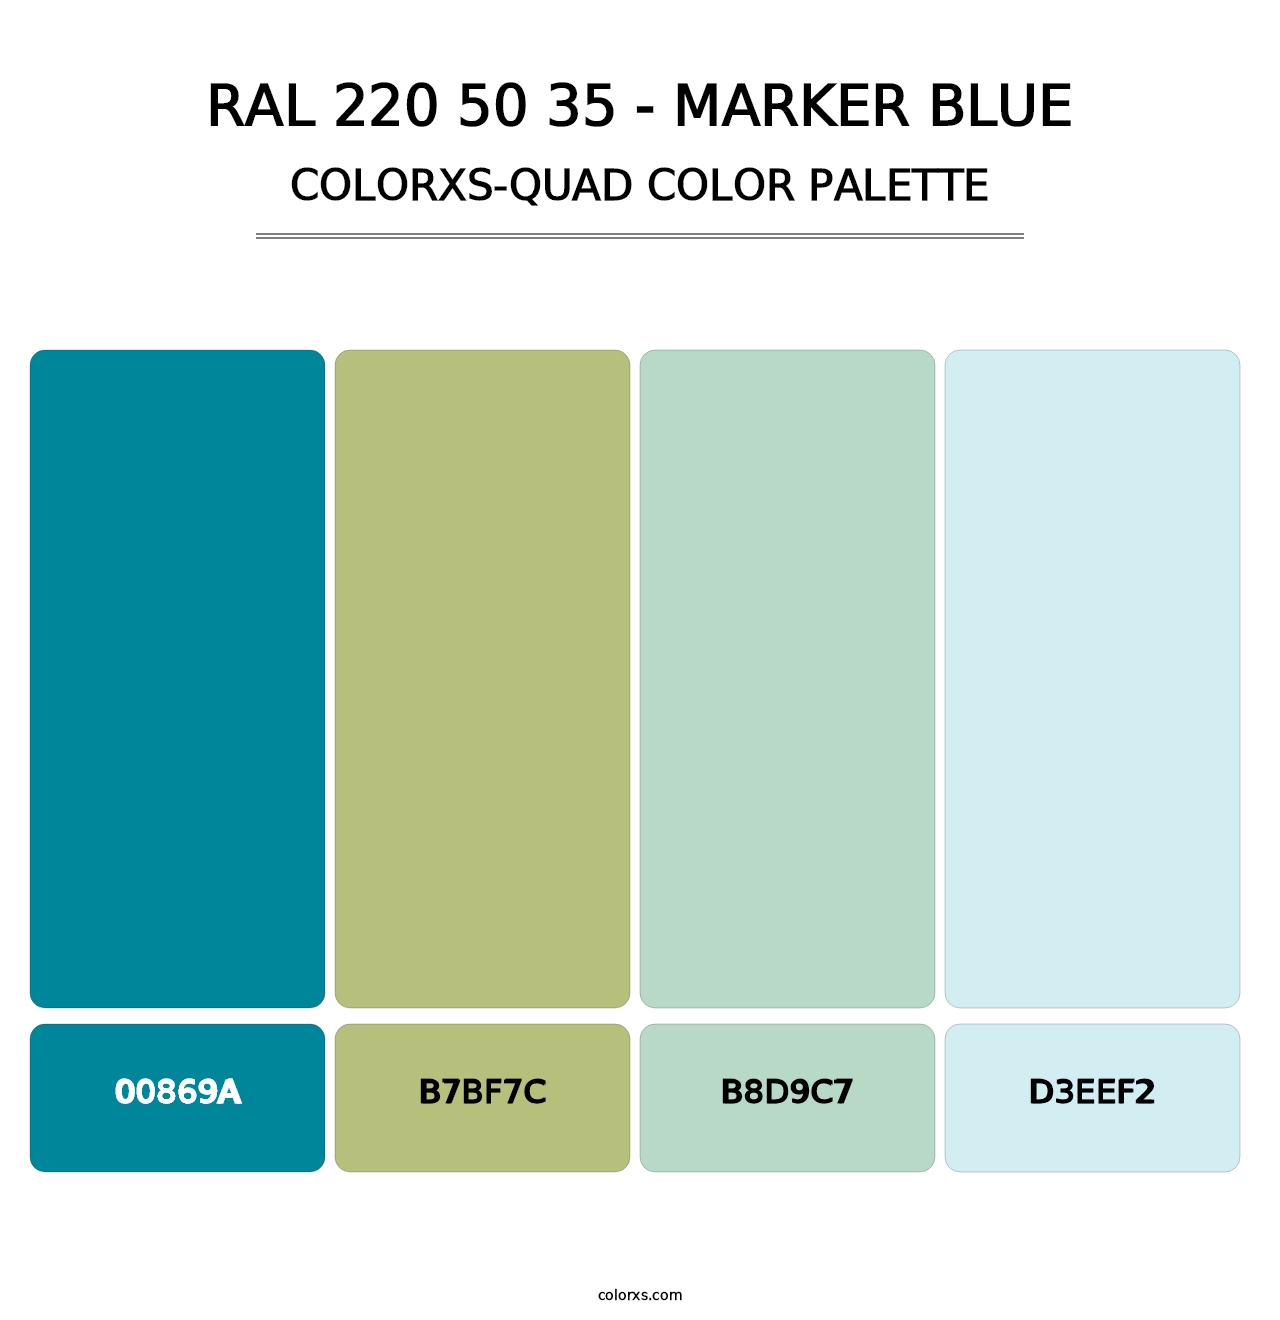 RAL 220 50 35 - Marker Blue - Colorxs Quad Palette